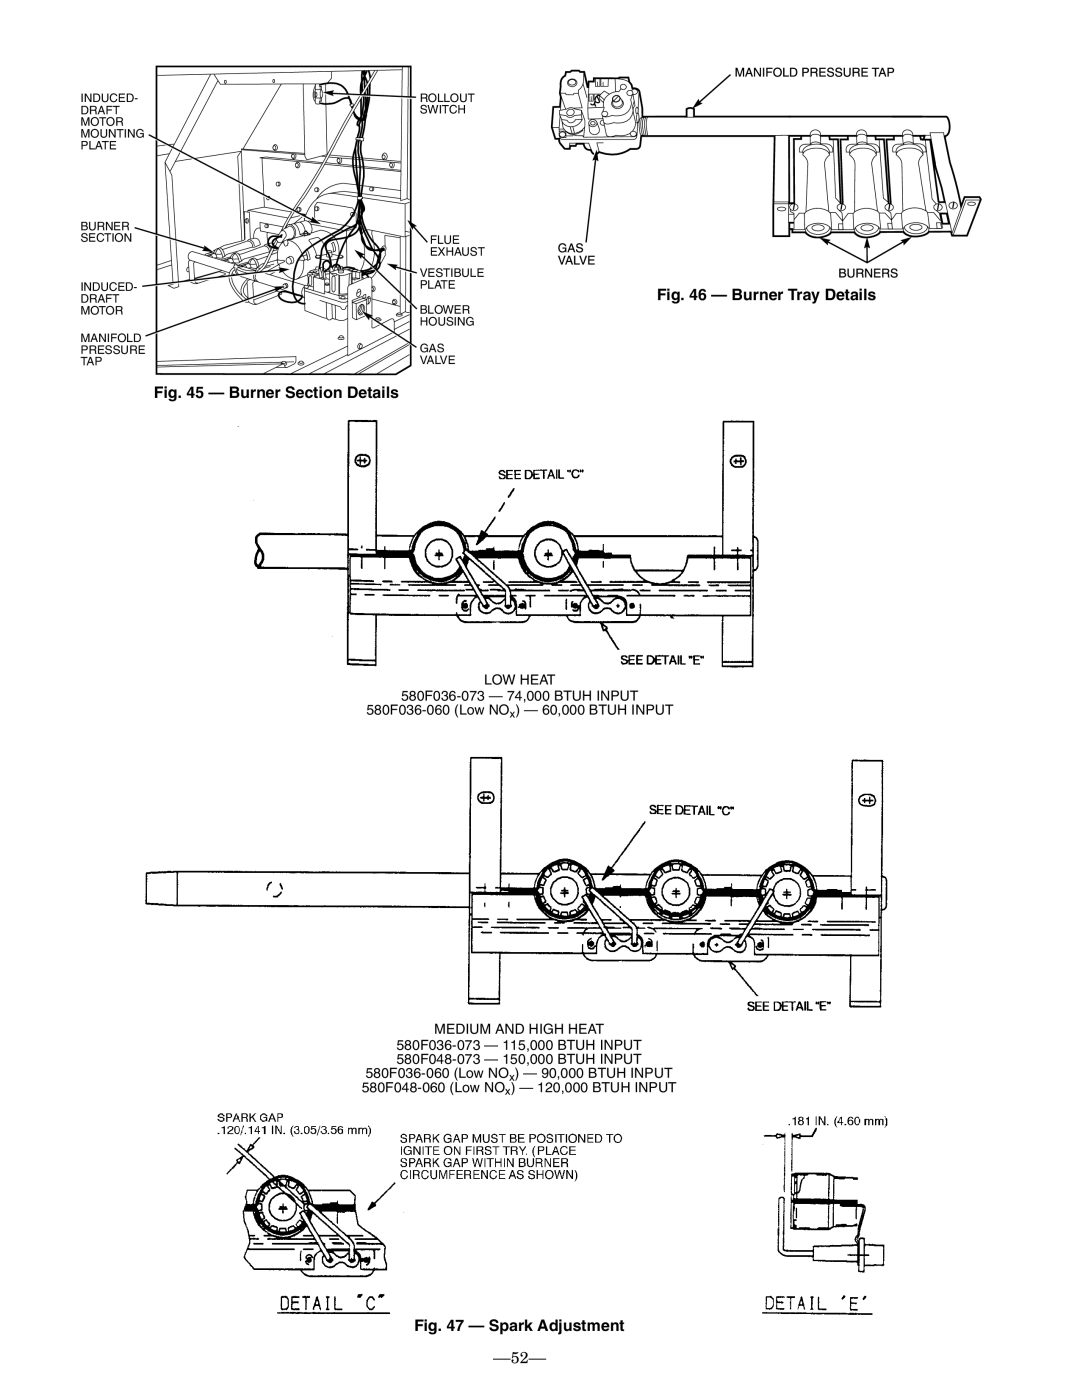 Bryant 580F installation instructions Burner Section Details, Burner Tray Details, Spark Adjustment 